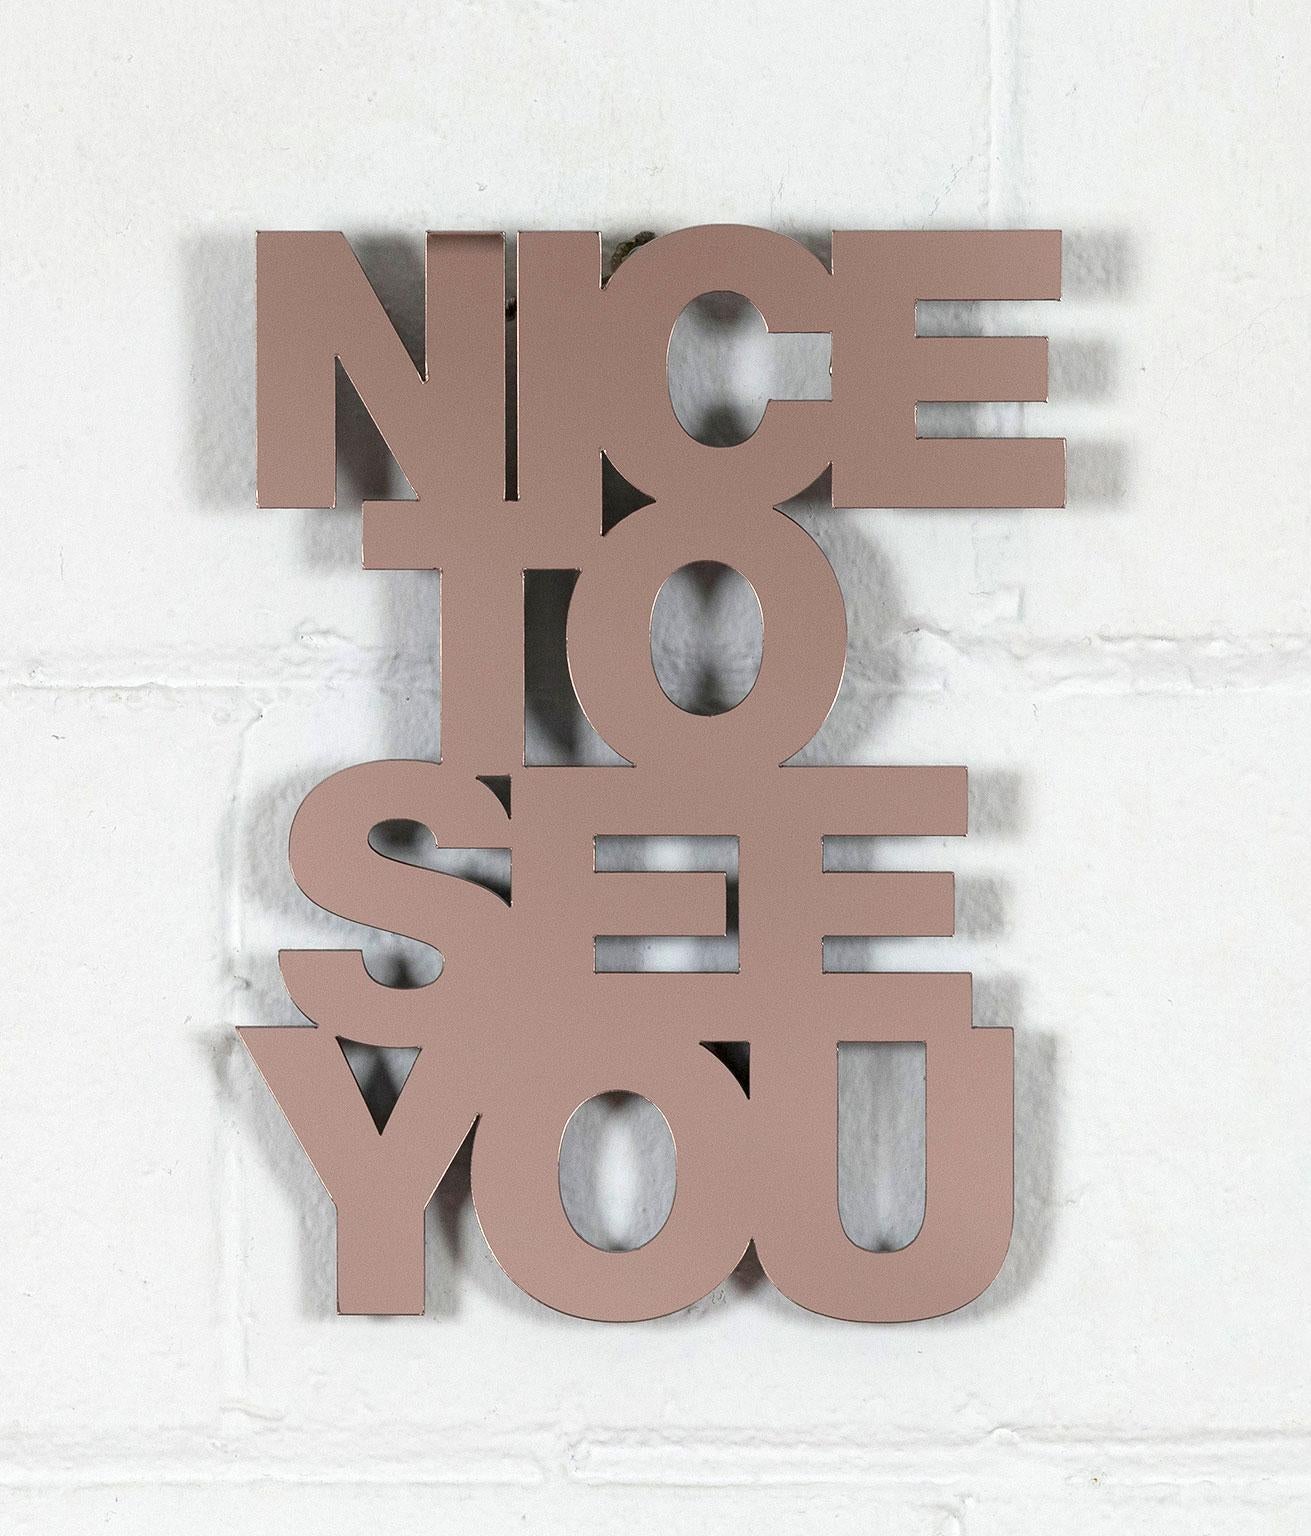 Après l'incroyable succès de la sculpture emblématique "Nice To See You" de Jade Rude, l'artiste est revenue avec un multiple plus petit, accessible mais percutant, en miroir de bronze acrylique. 

Jade Rude est une artiste pluridisciplinaire basée